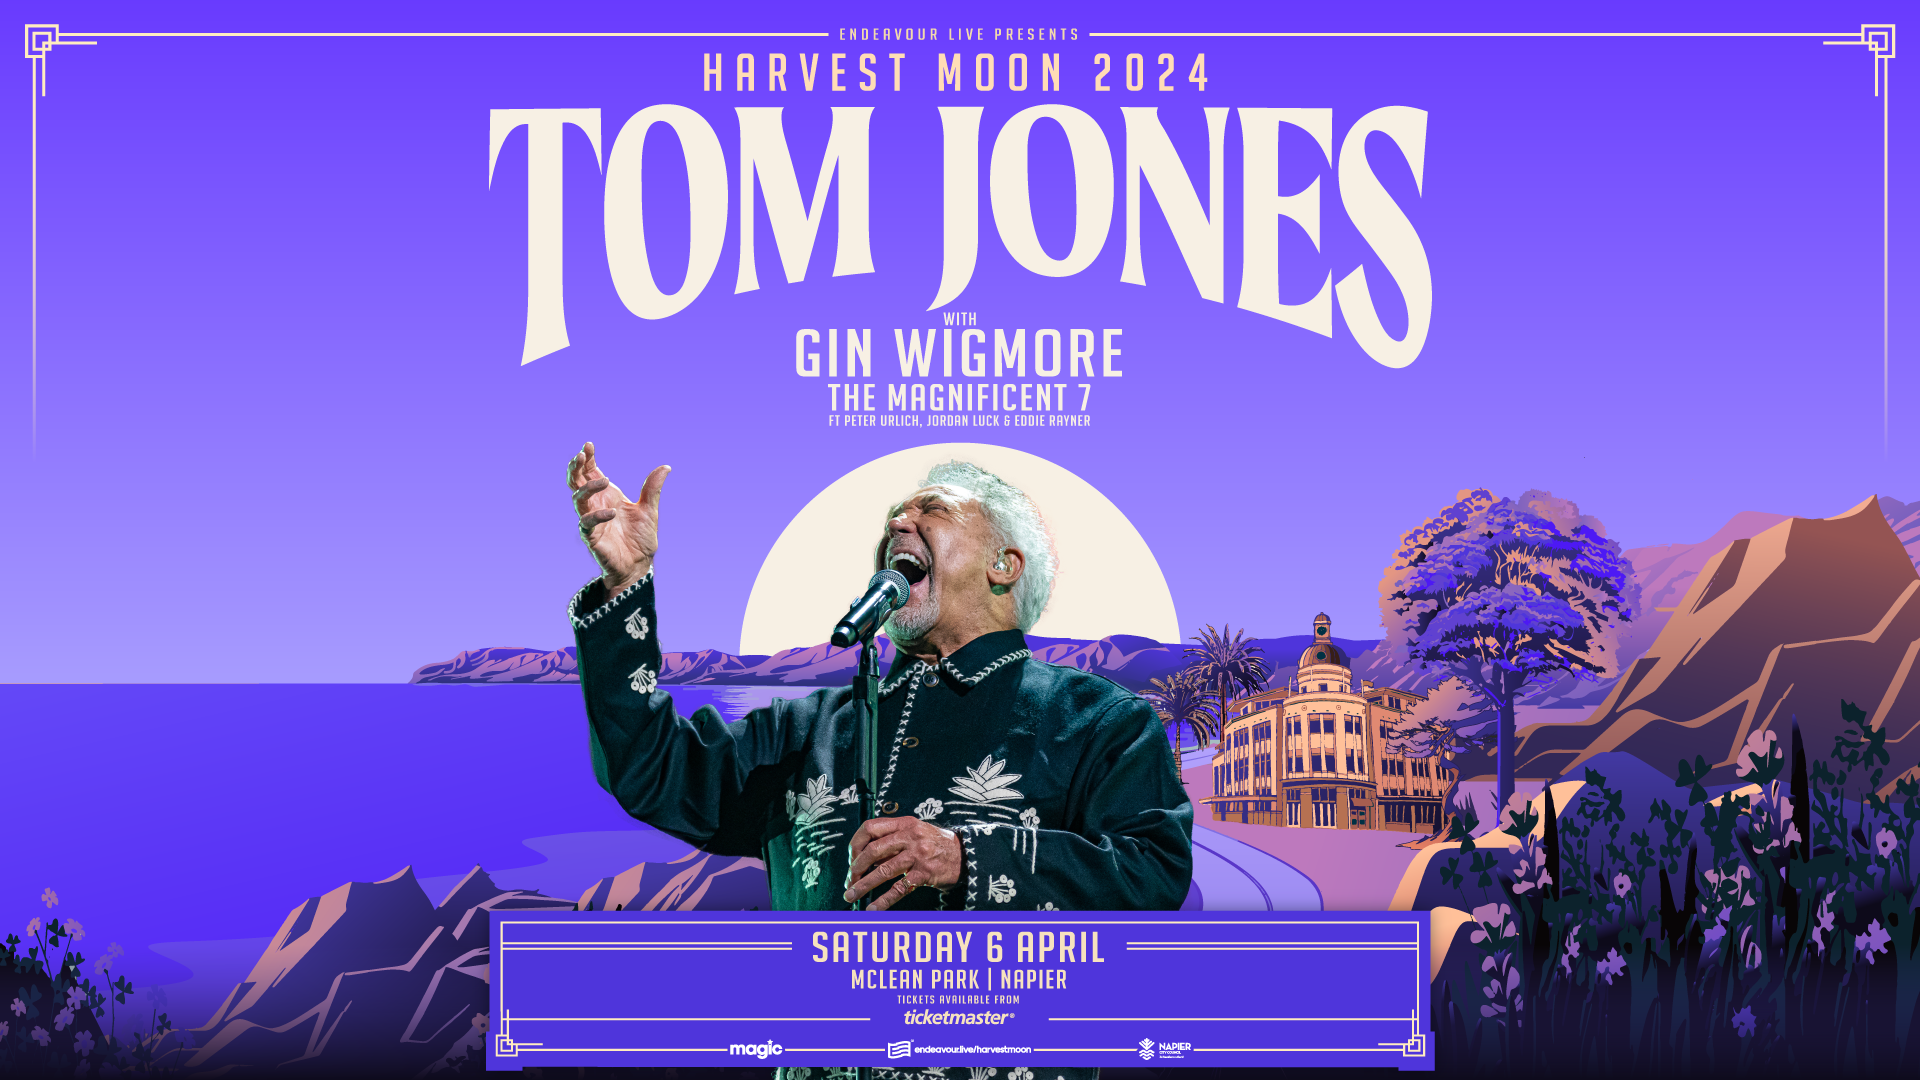 tom jones gin wigmore harvest moon